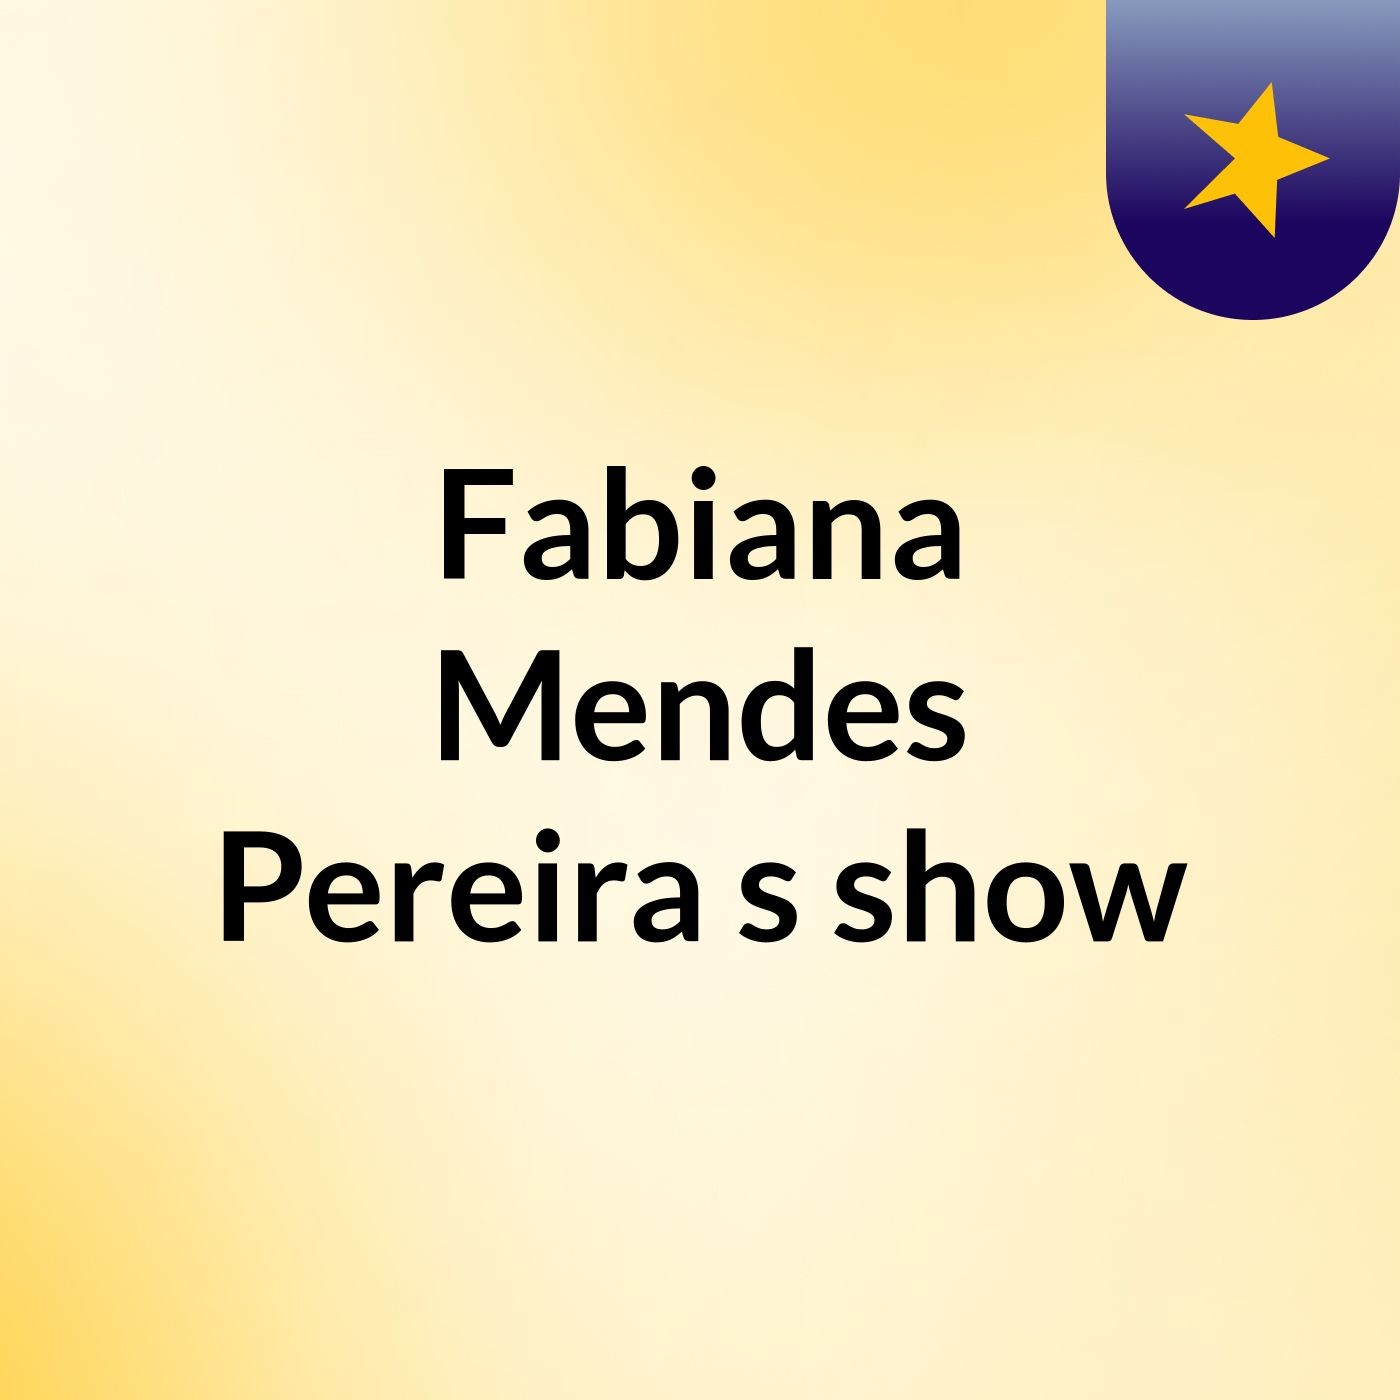 Fabiana Mendes Pereira's show